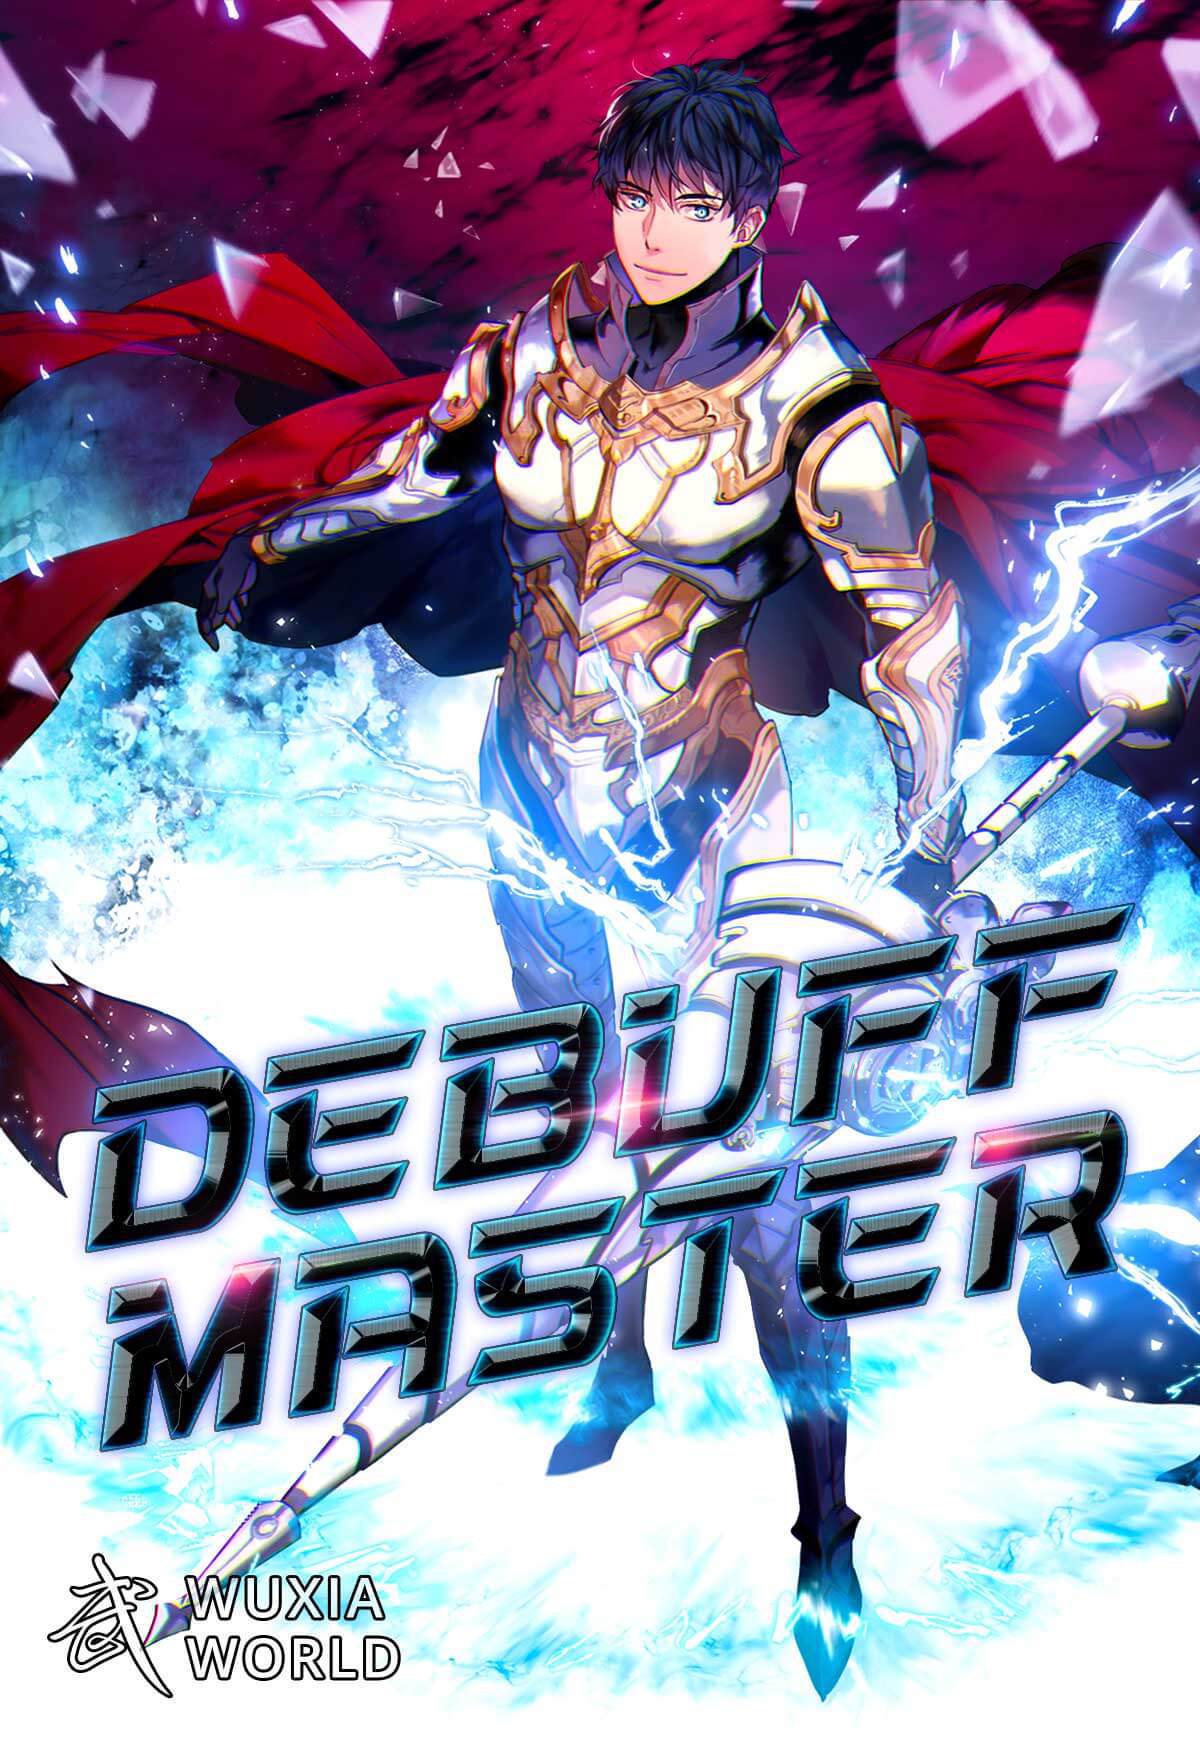 Debuff Master